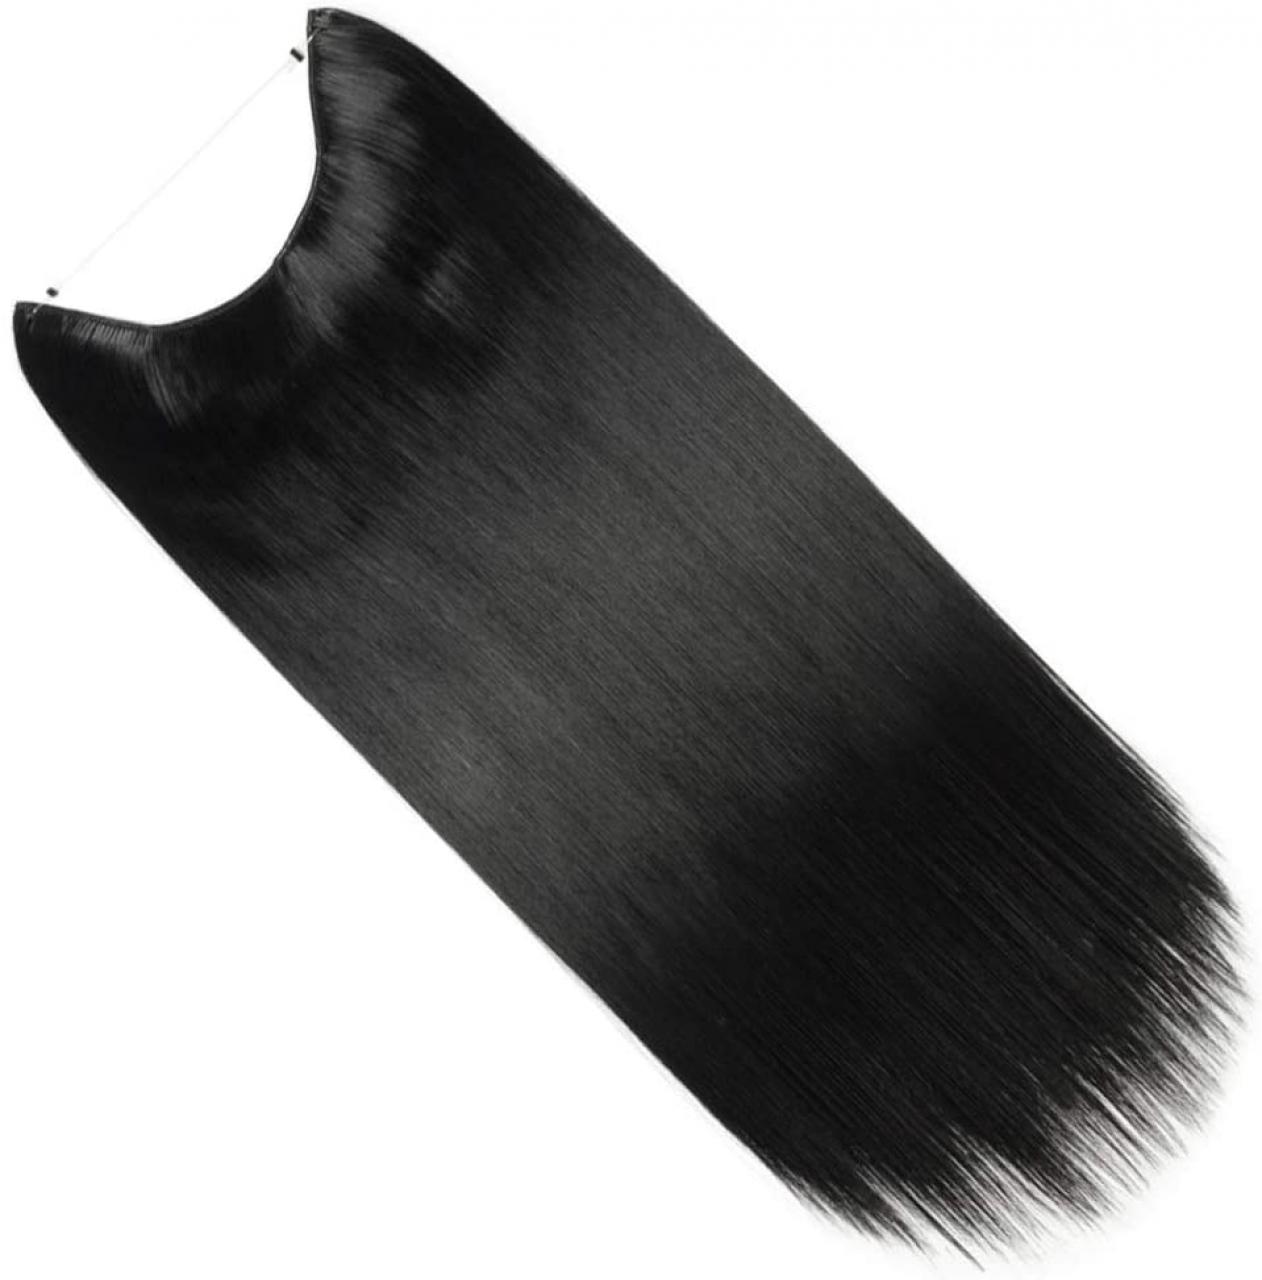 Extension a corona con capelli naturali